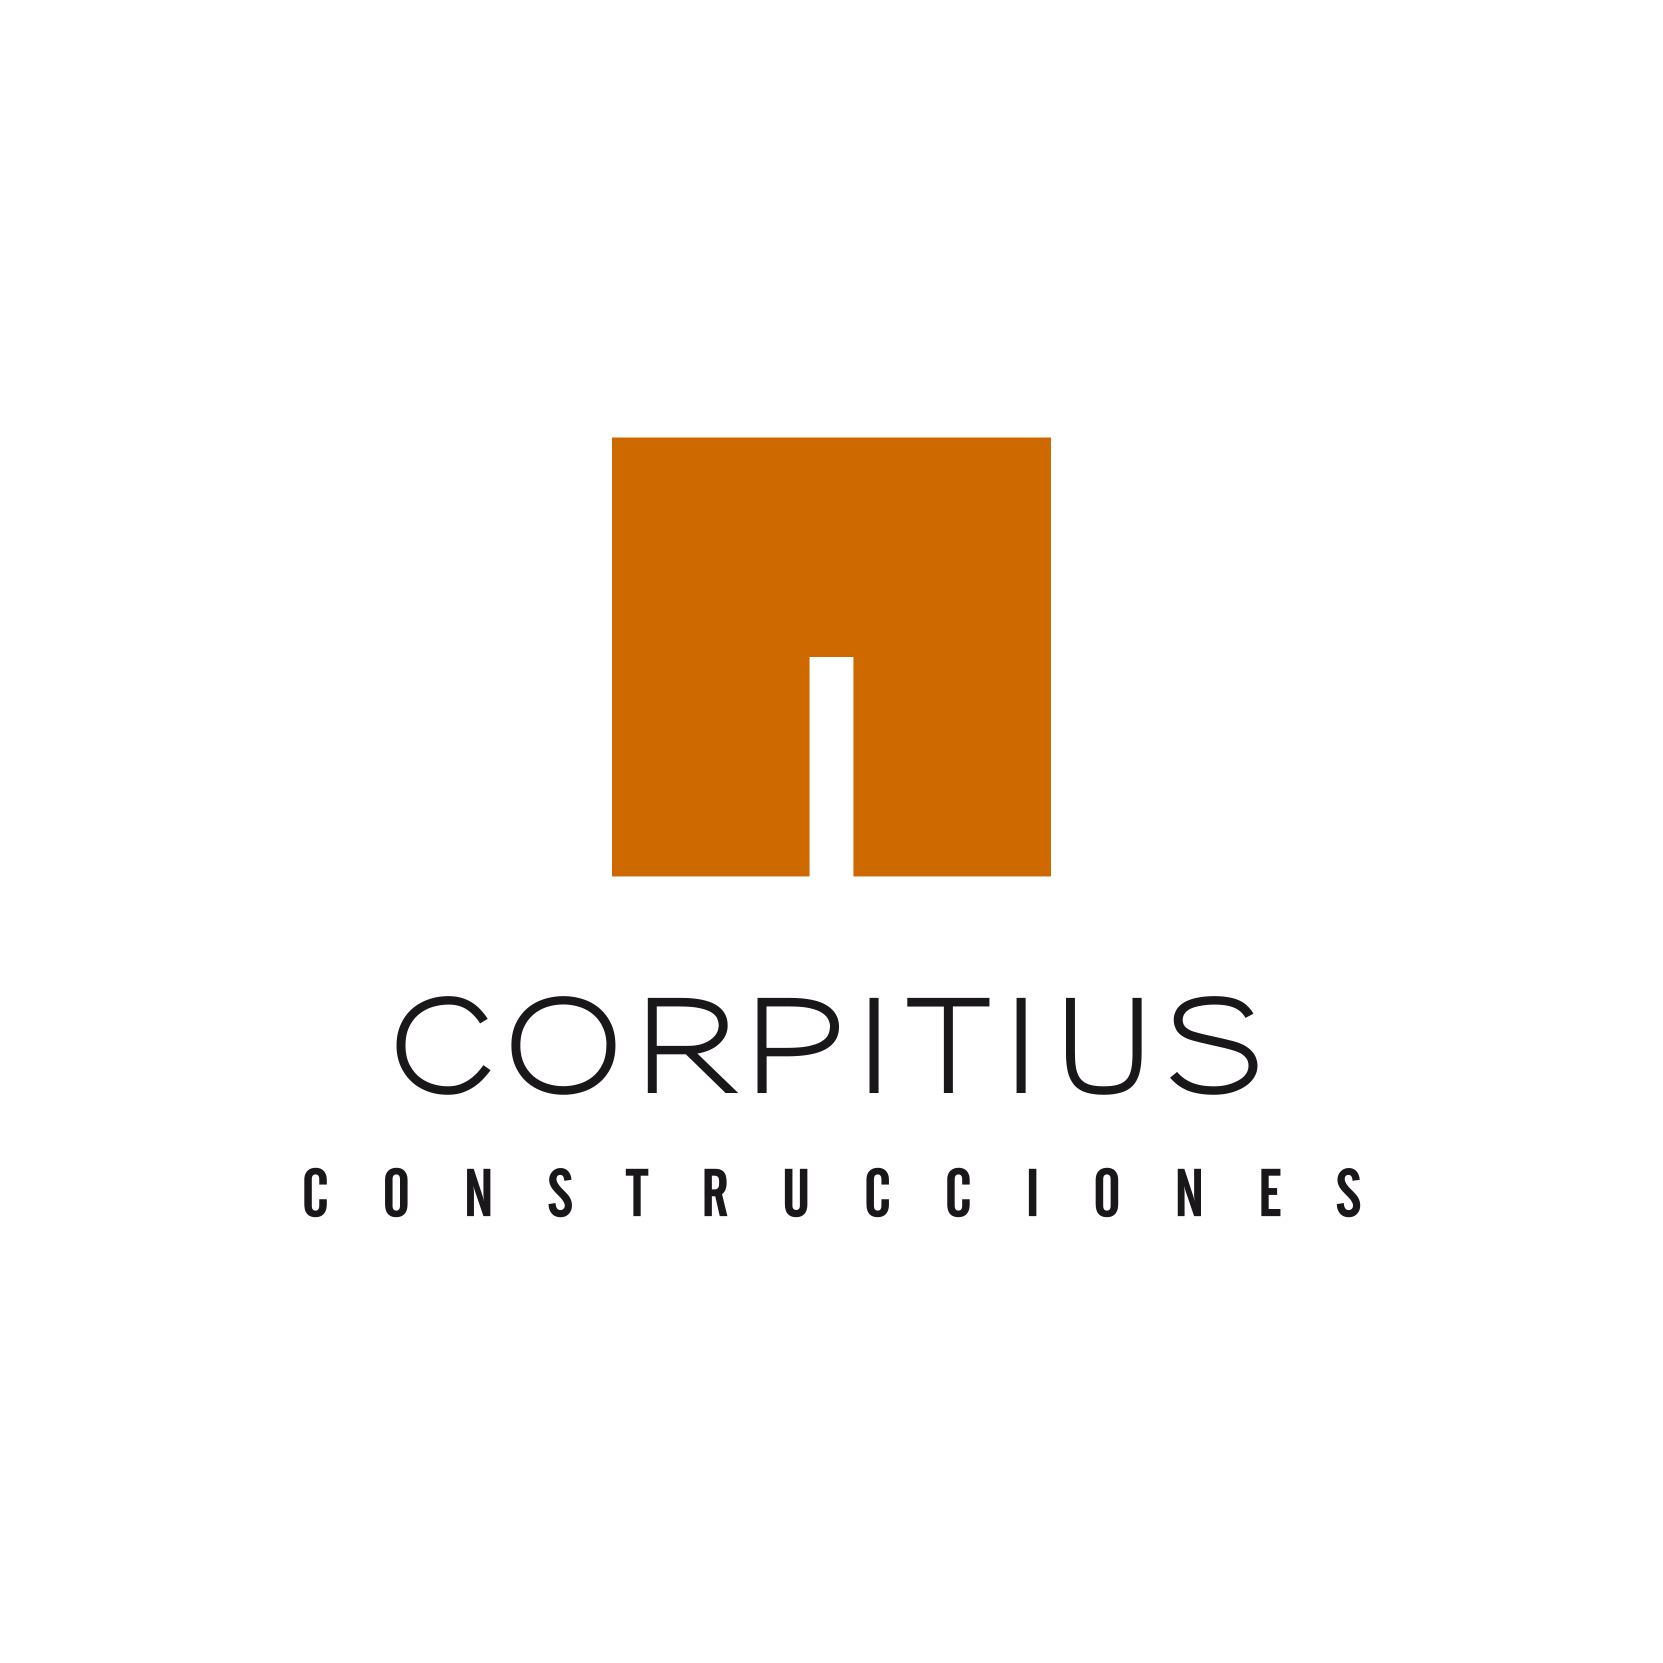 CORPITIUS